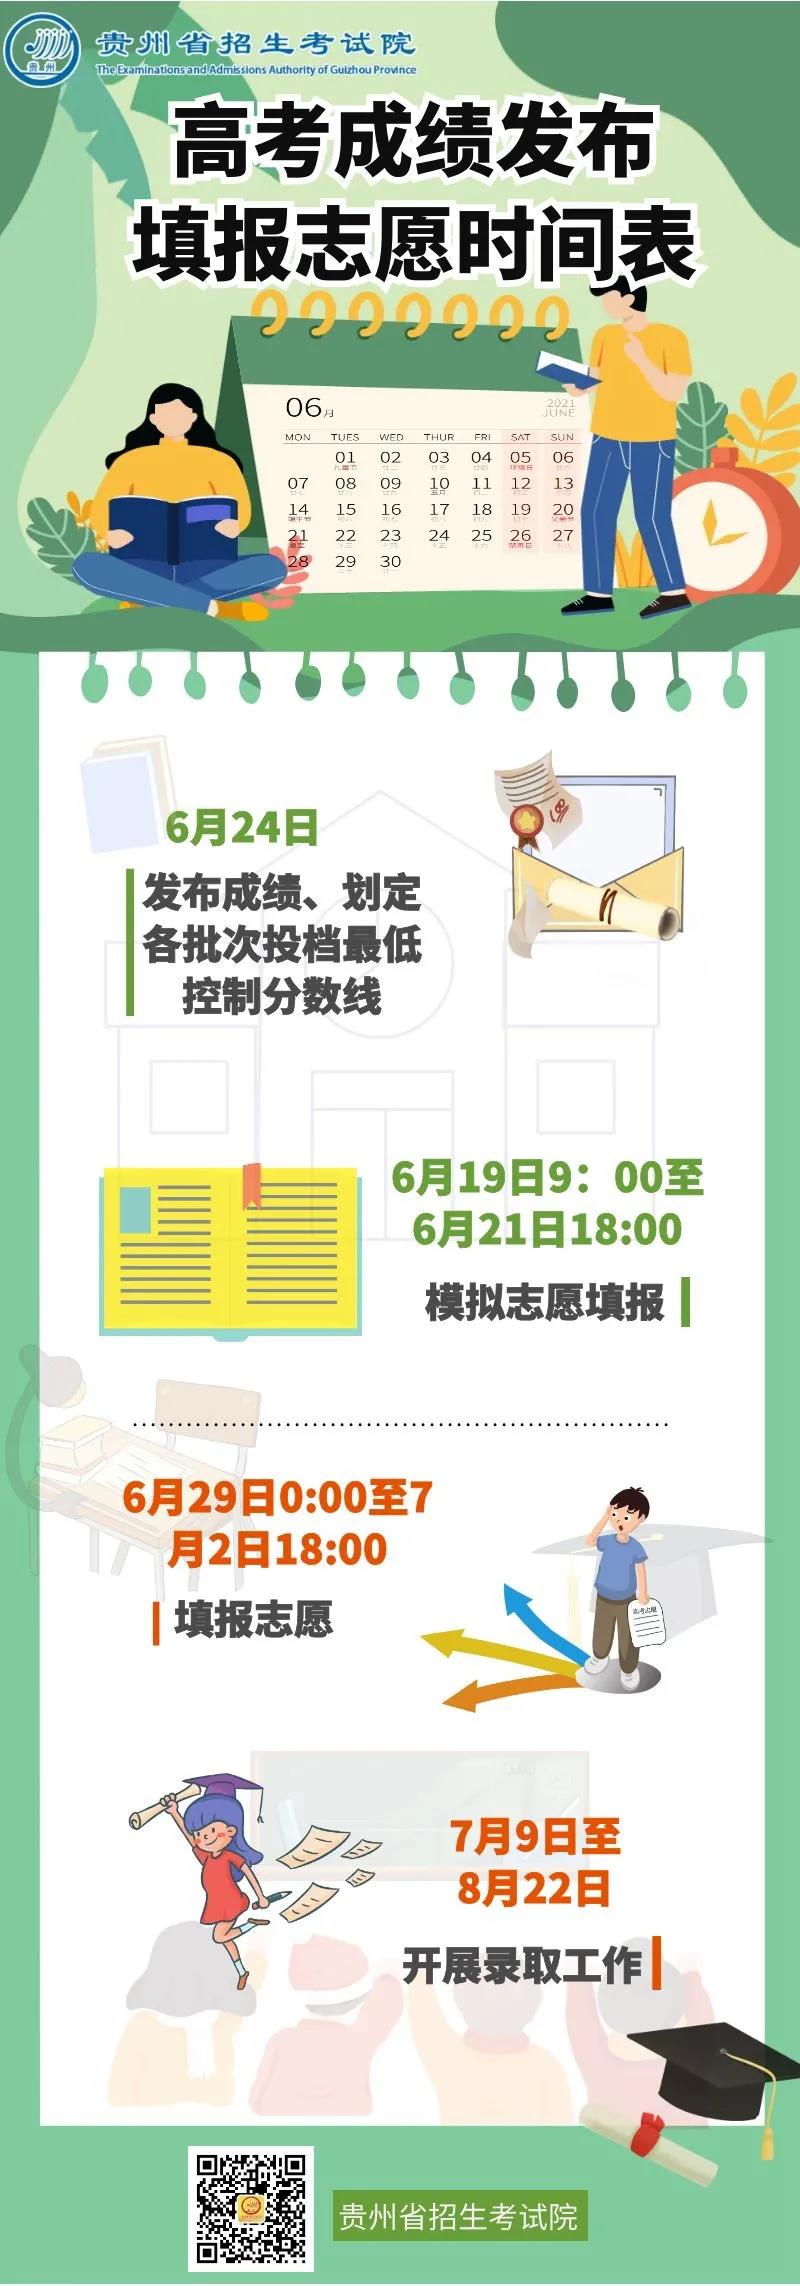 贵州省高考成绩、填报志愿时间表确定